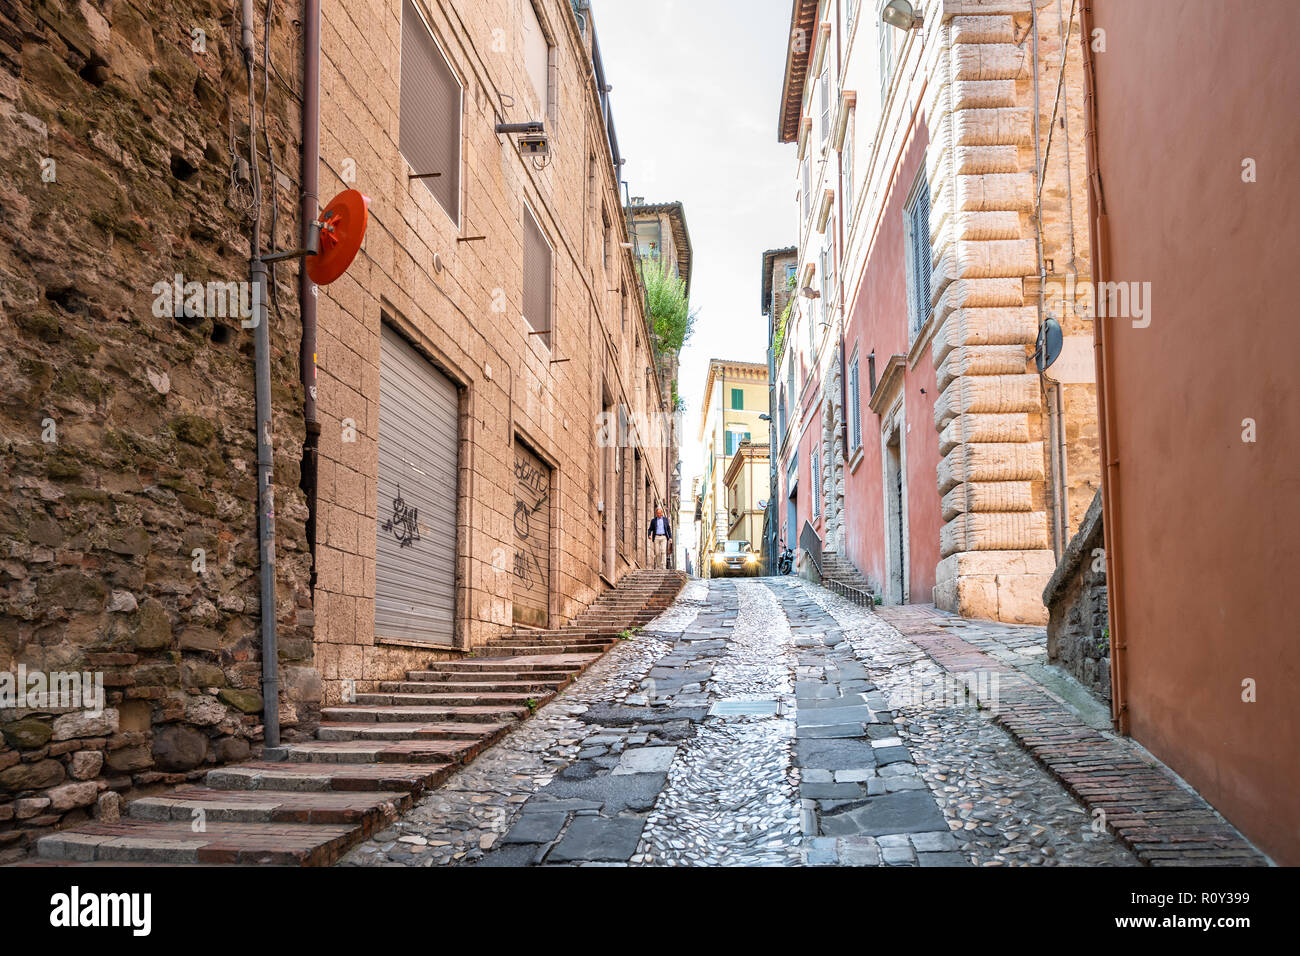 Perugia, Italia - 29 agosto 2018: Via Bartolo stretta, la vecchia strada di ciottoli, su strada con vetture, gente camminare nell antica, storica città medievale, città Foto Stock